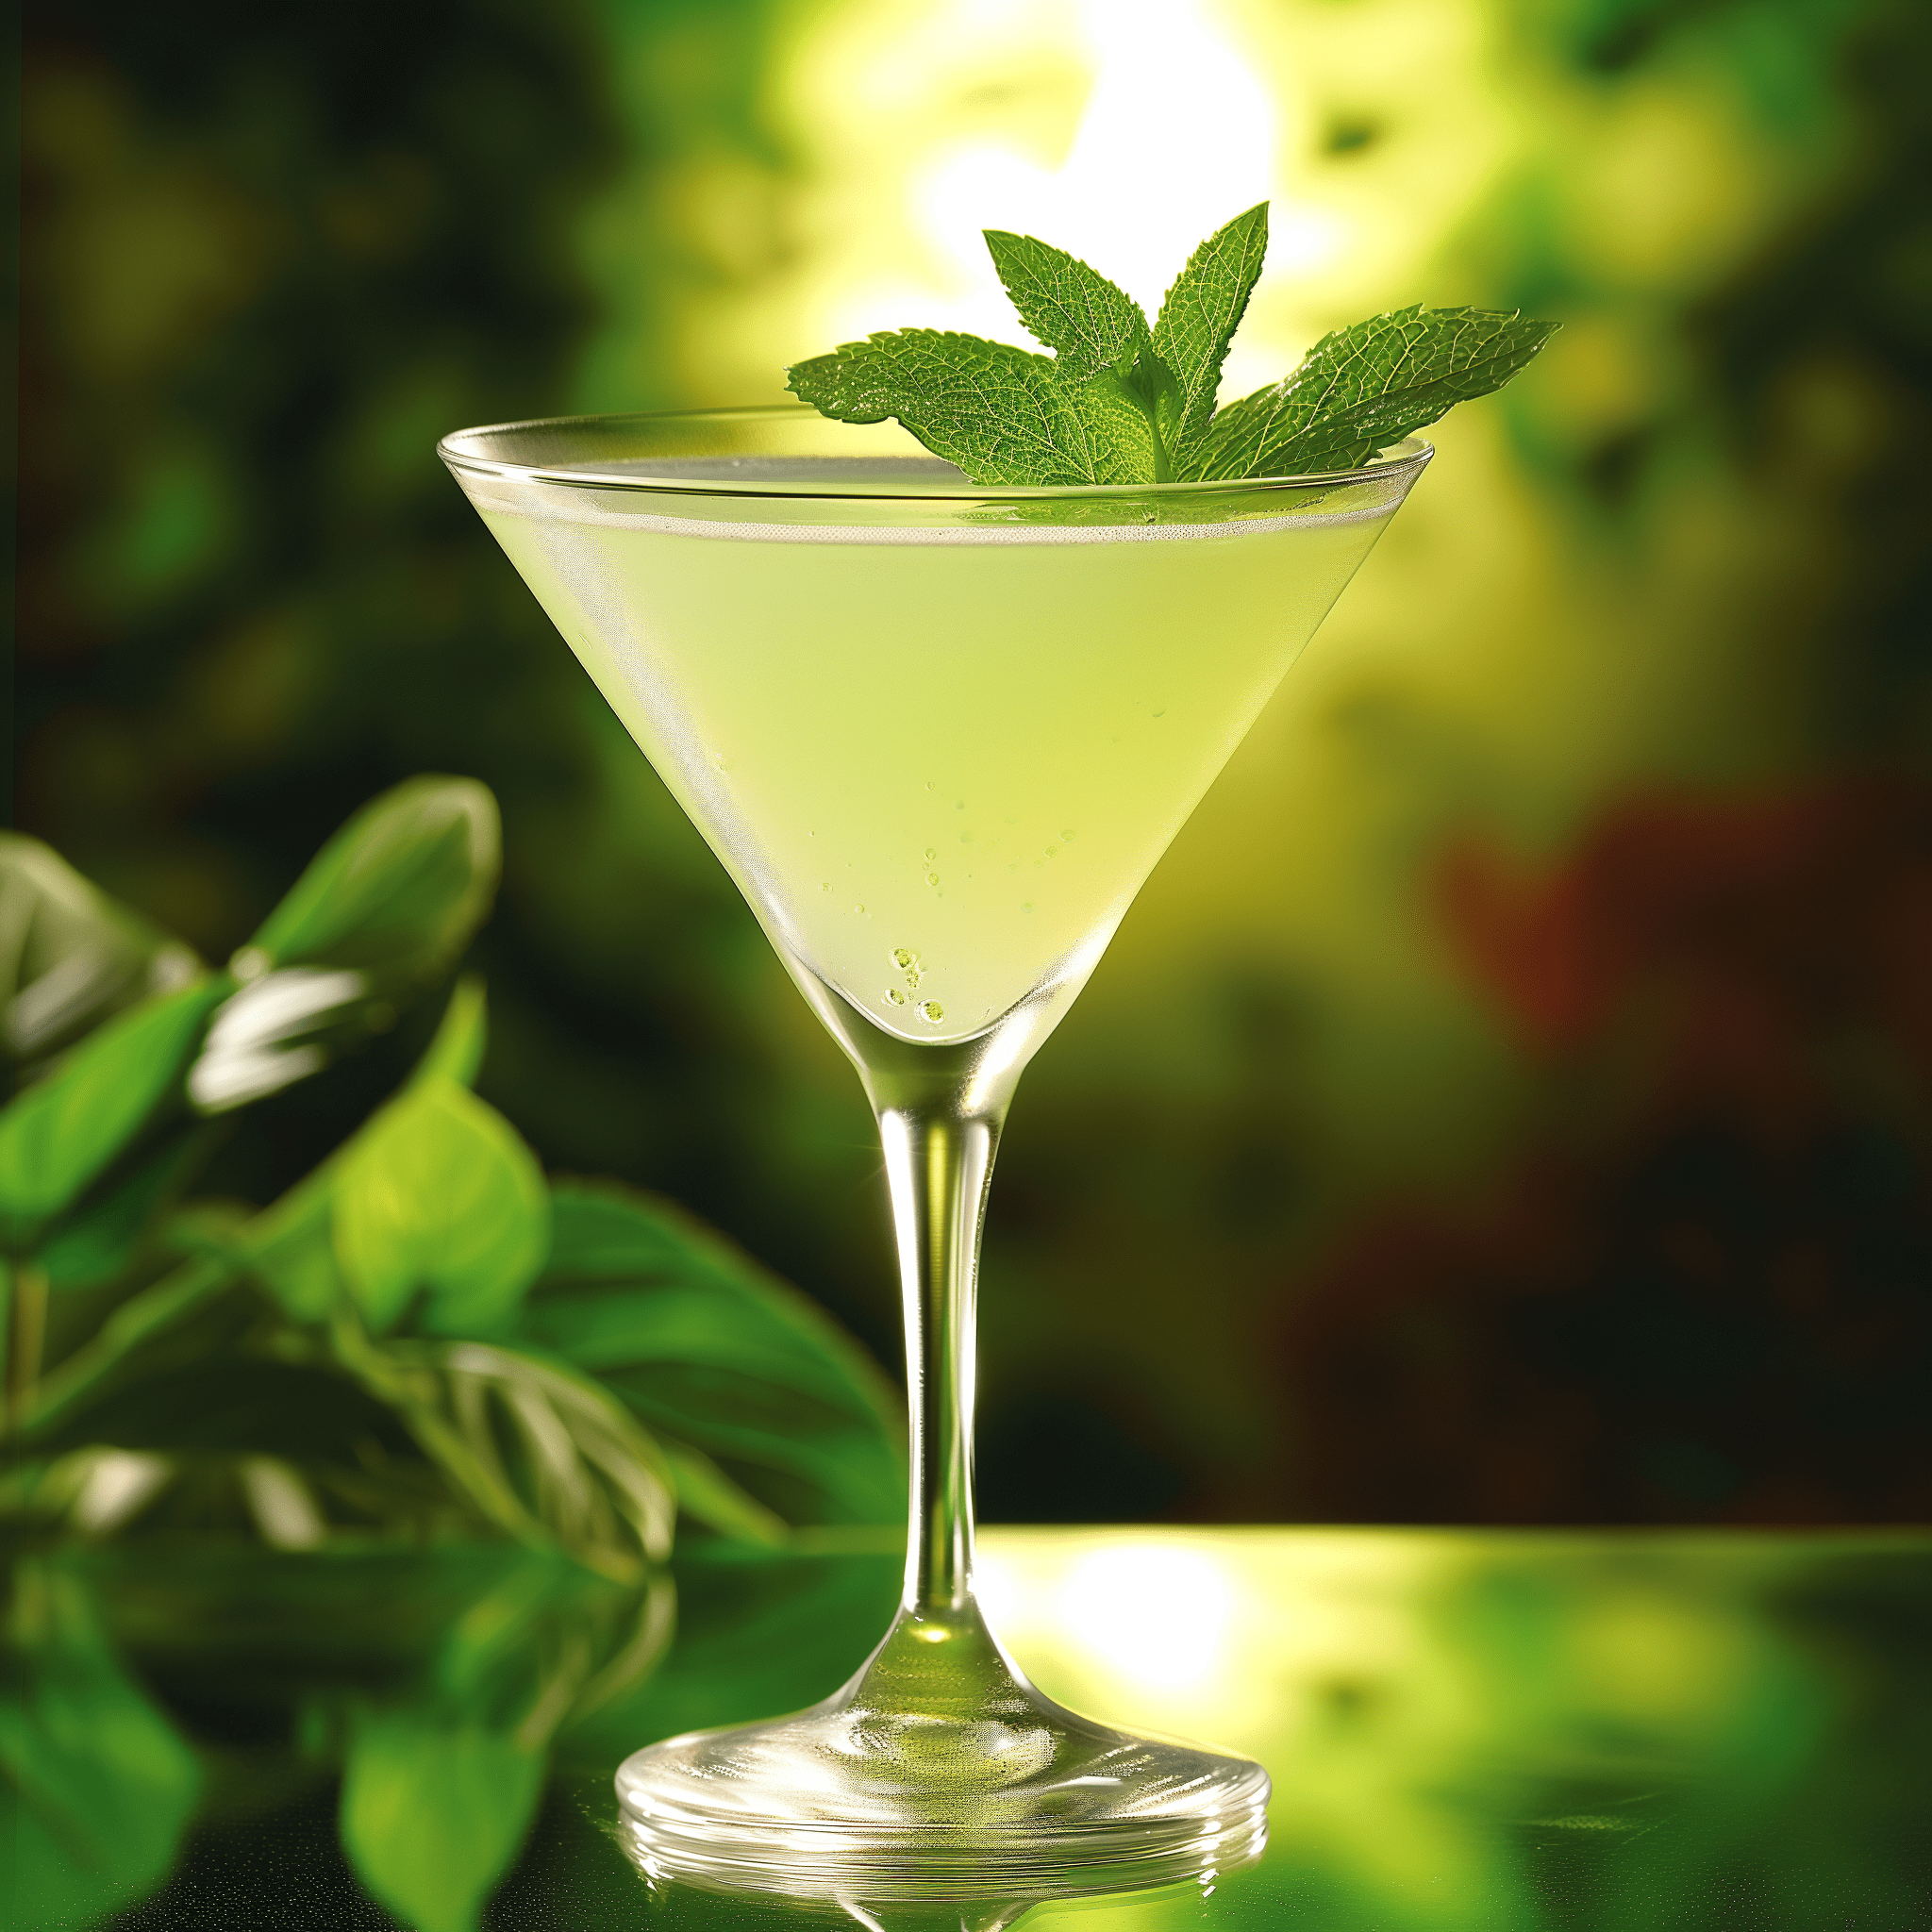 Daisy Cutter Martini Cóctel Receta - El Daisy Cutter Martini tiene un equilibrio delicioso de notas herbales y dulces, con un toque de cítricos y un fondo botánico complejo. Es refrescante, ligeramente dulce y tiene un final suave.